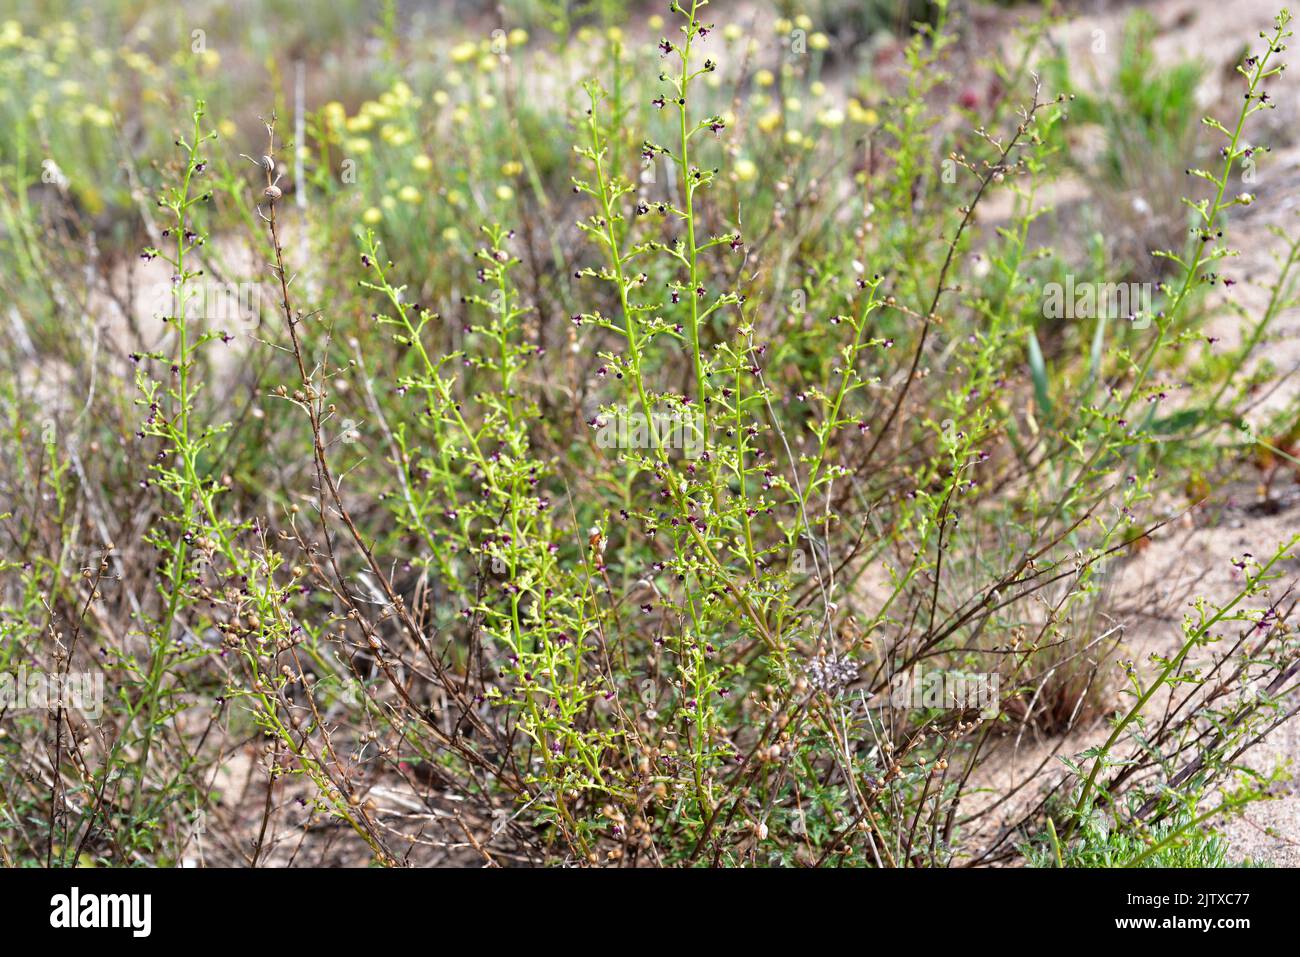 Ruda canina (Scrophularia canina) es una hierba perenne originaria de la cuenca mediterránea y Portugal. Esta foto fue tomada en Pals, Girona, Cataluña, Foto de stock